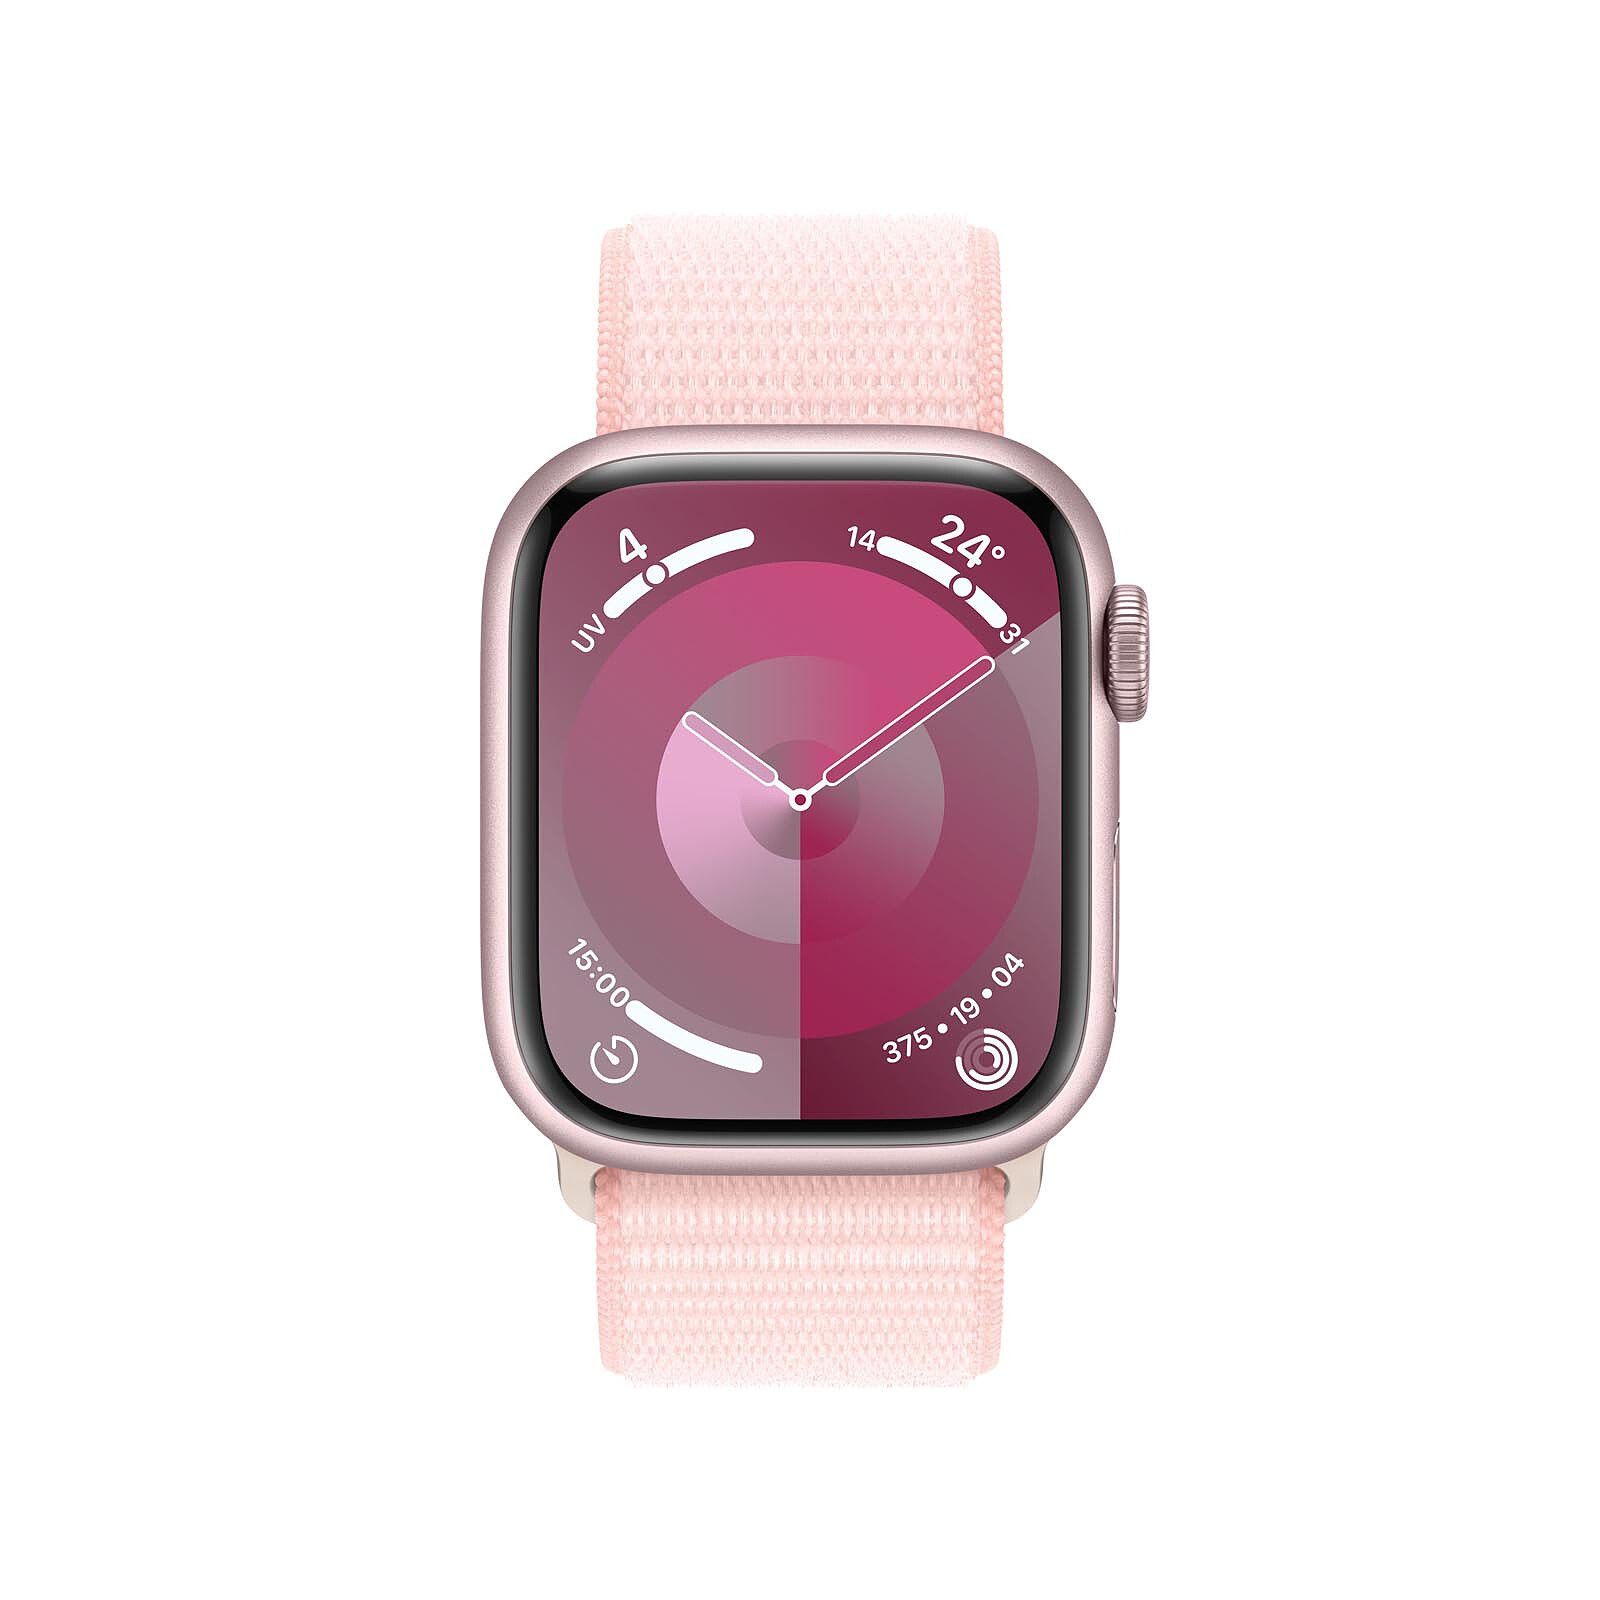 OPPO Watch (41 mm / Black) - Smart watch - LDLC 3-year warranty